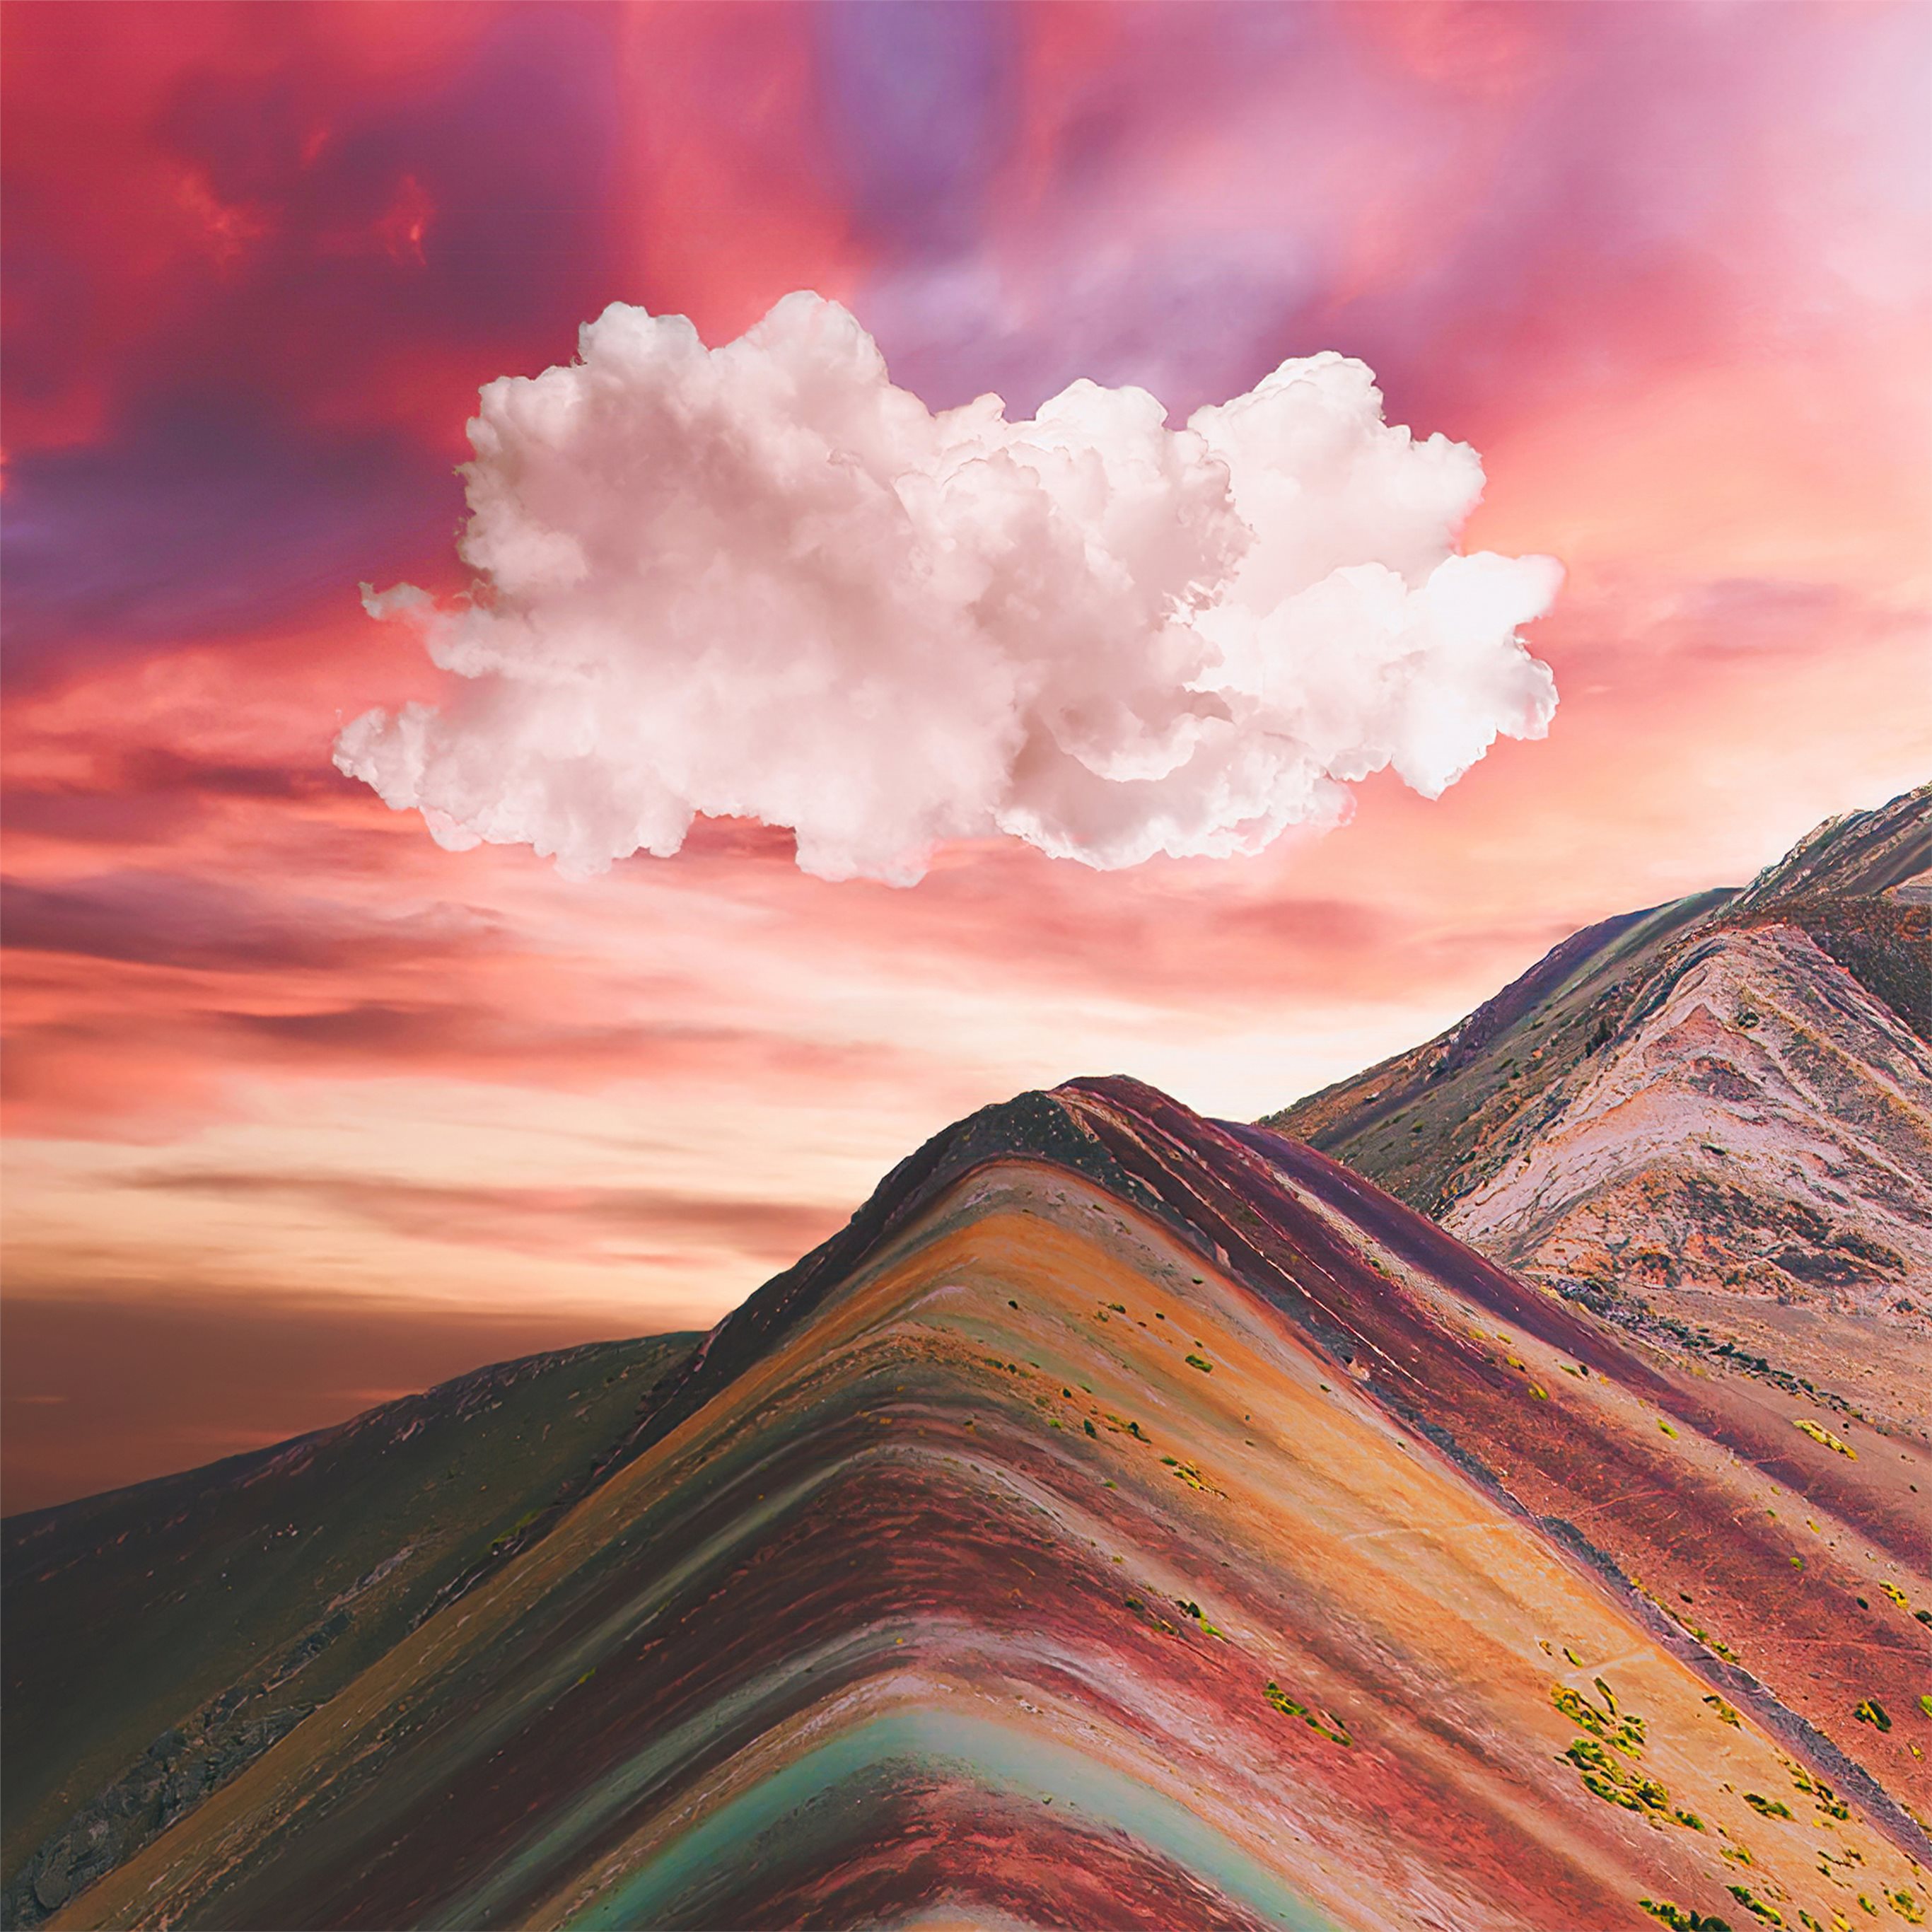 Hãy cùng chiêm ngưỡng vẻ đẹp nơi núi cao Andes tuyệt đẹp của Vinicunca Rainbow Mountain với những bậc thềm màu sắc đầy mê hoặc!